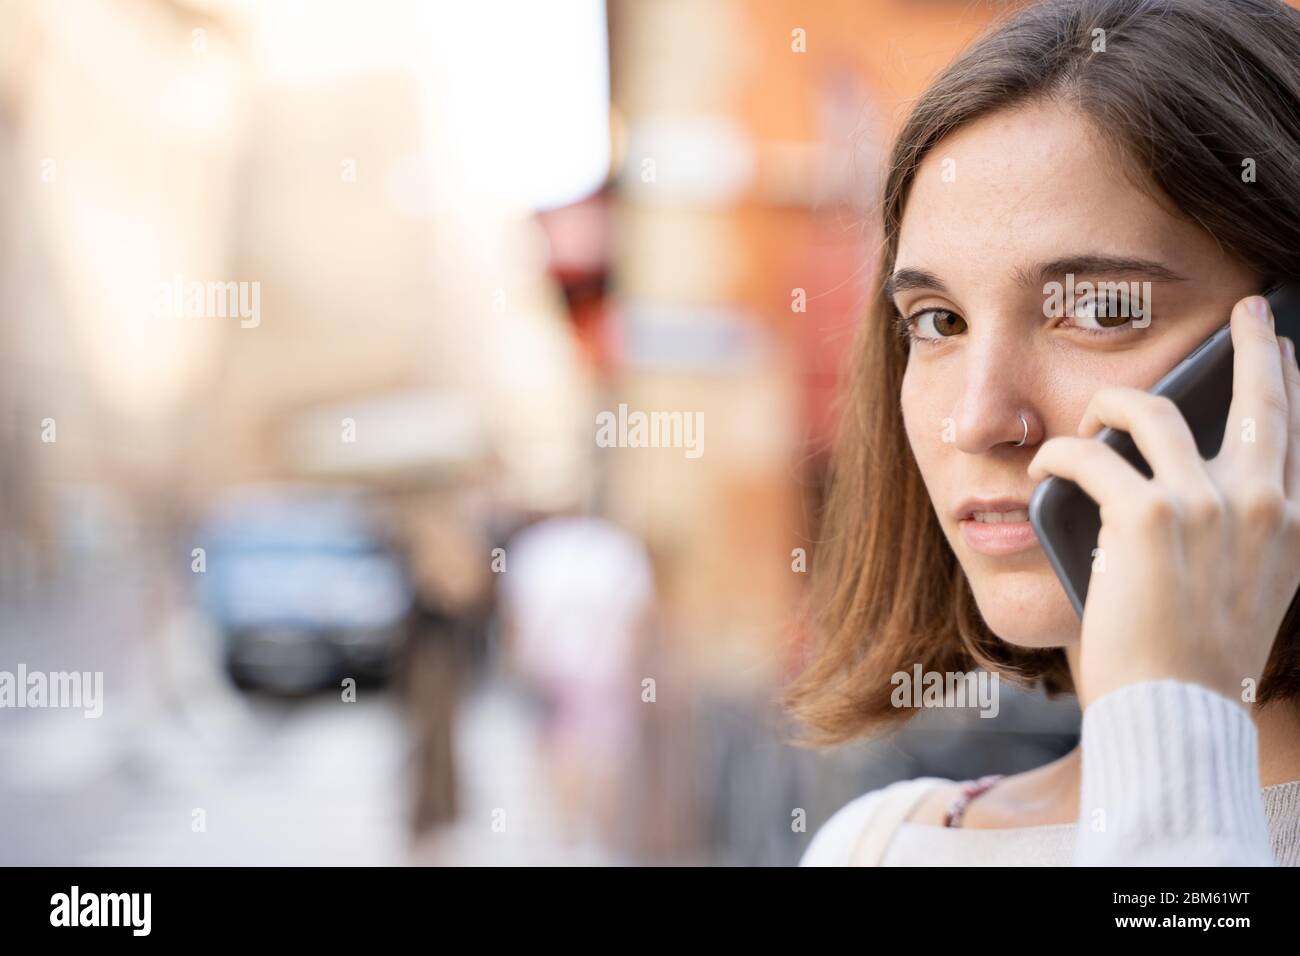 Junge Frau mit einer halben Mähne und einer durchbohrten Nase, die mit einem Smartphone mit besorgtem Ausdruck auf der Straße spricht Stockfoto